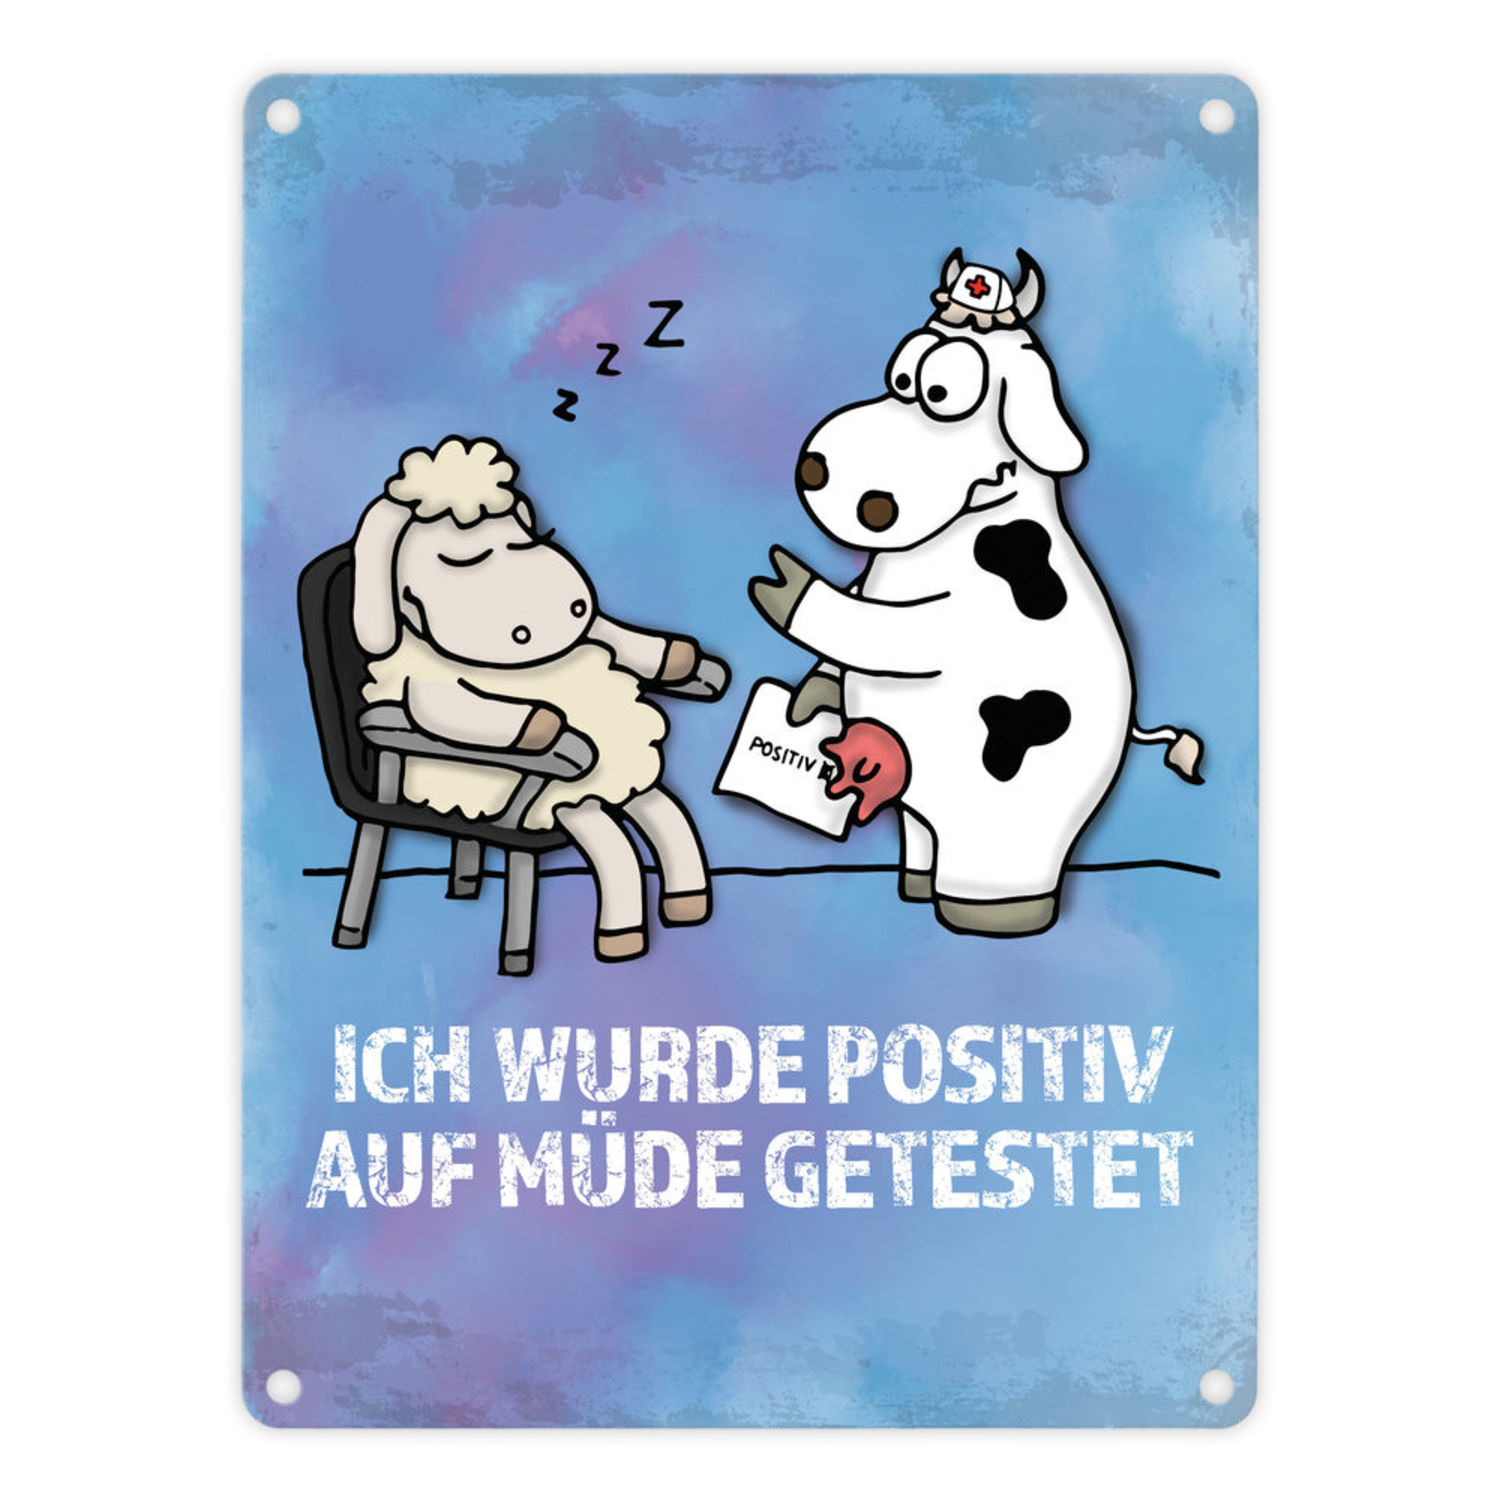 46++ Spruch muede , Metallschild mit Schaf und Kuh Motiv und Spruch Positiv auf Müde getestet bei trendaffe.de